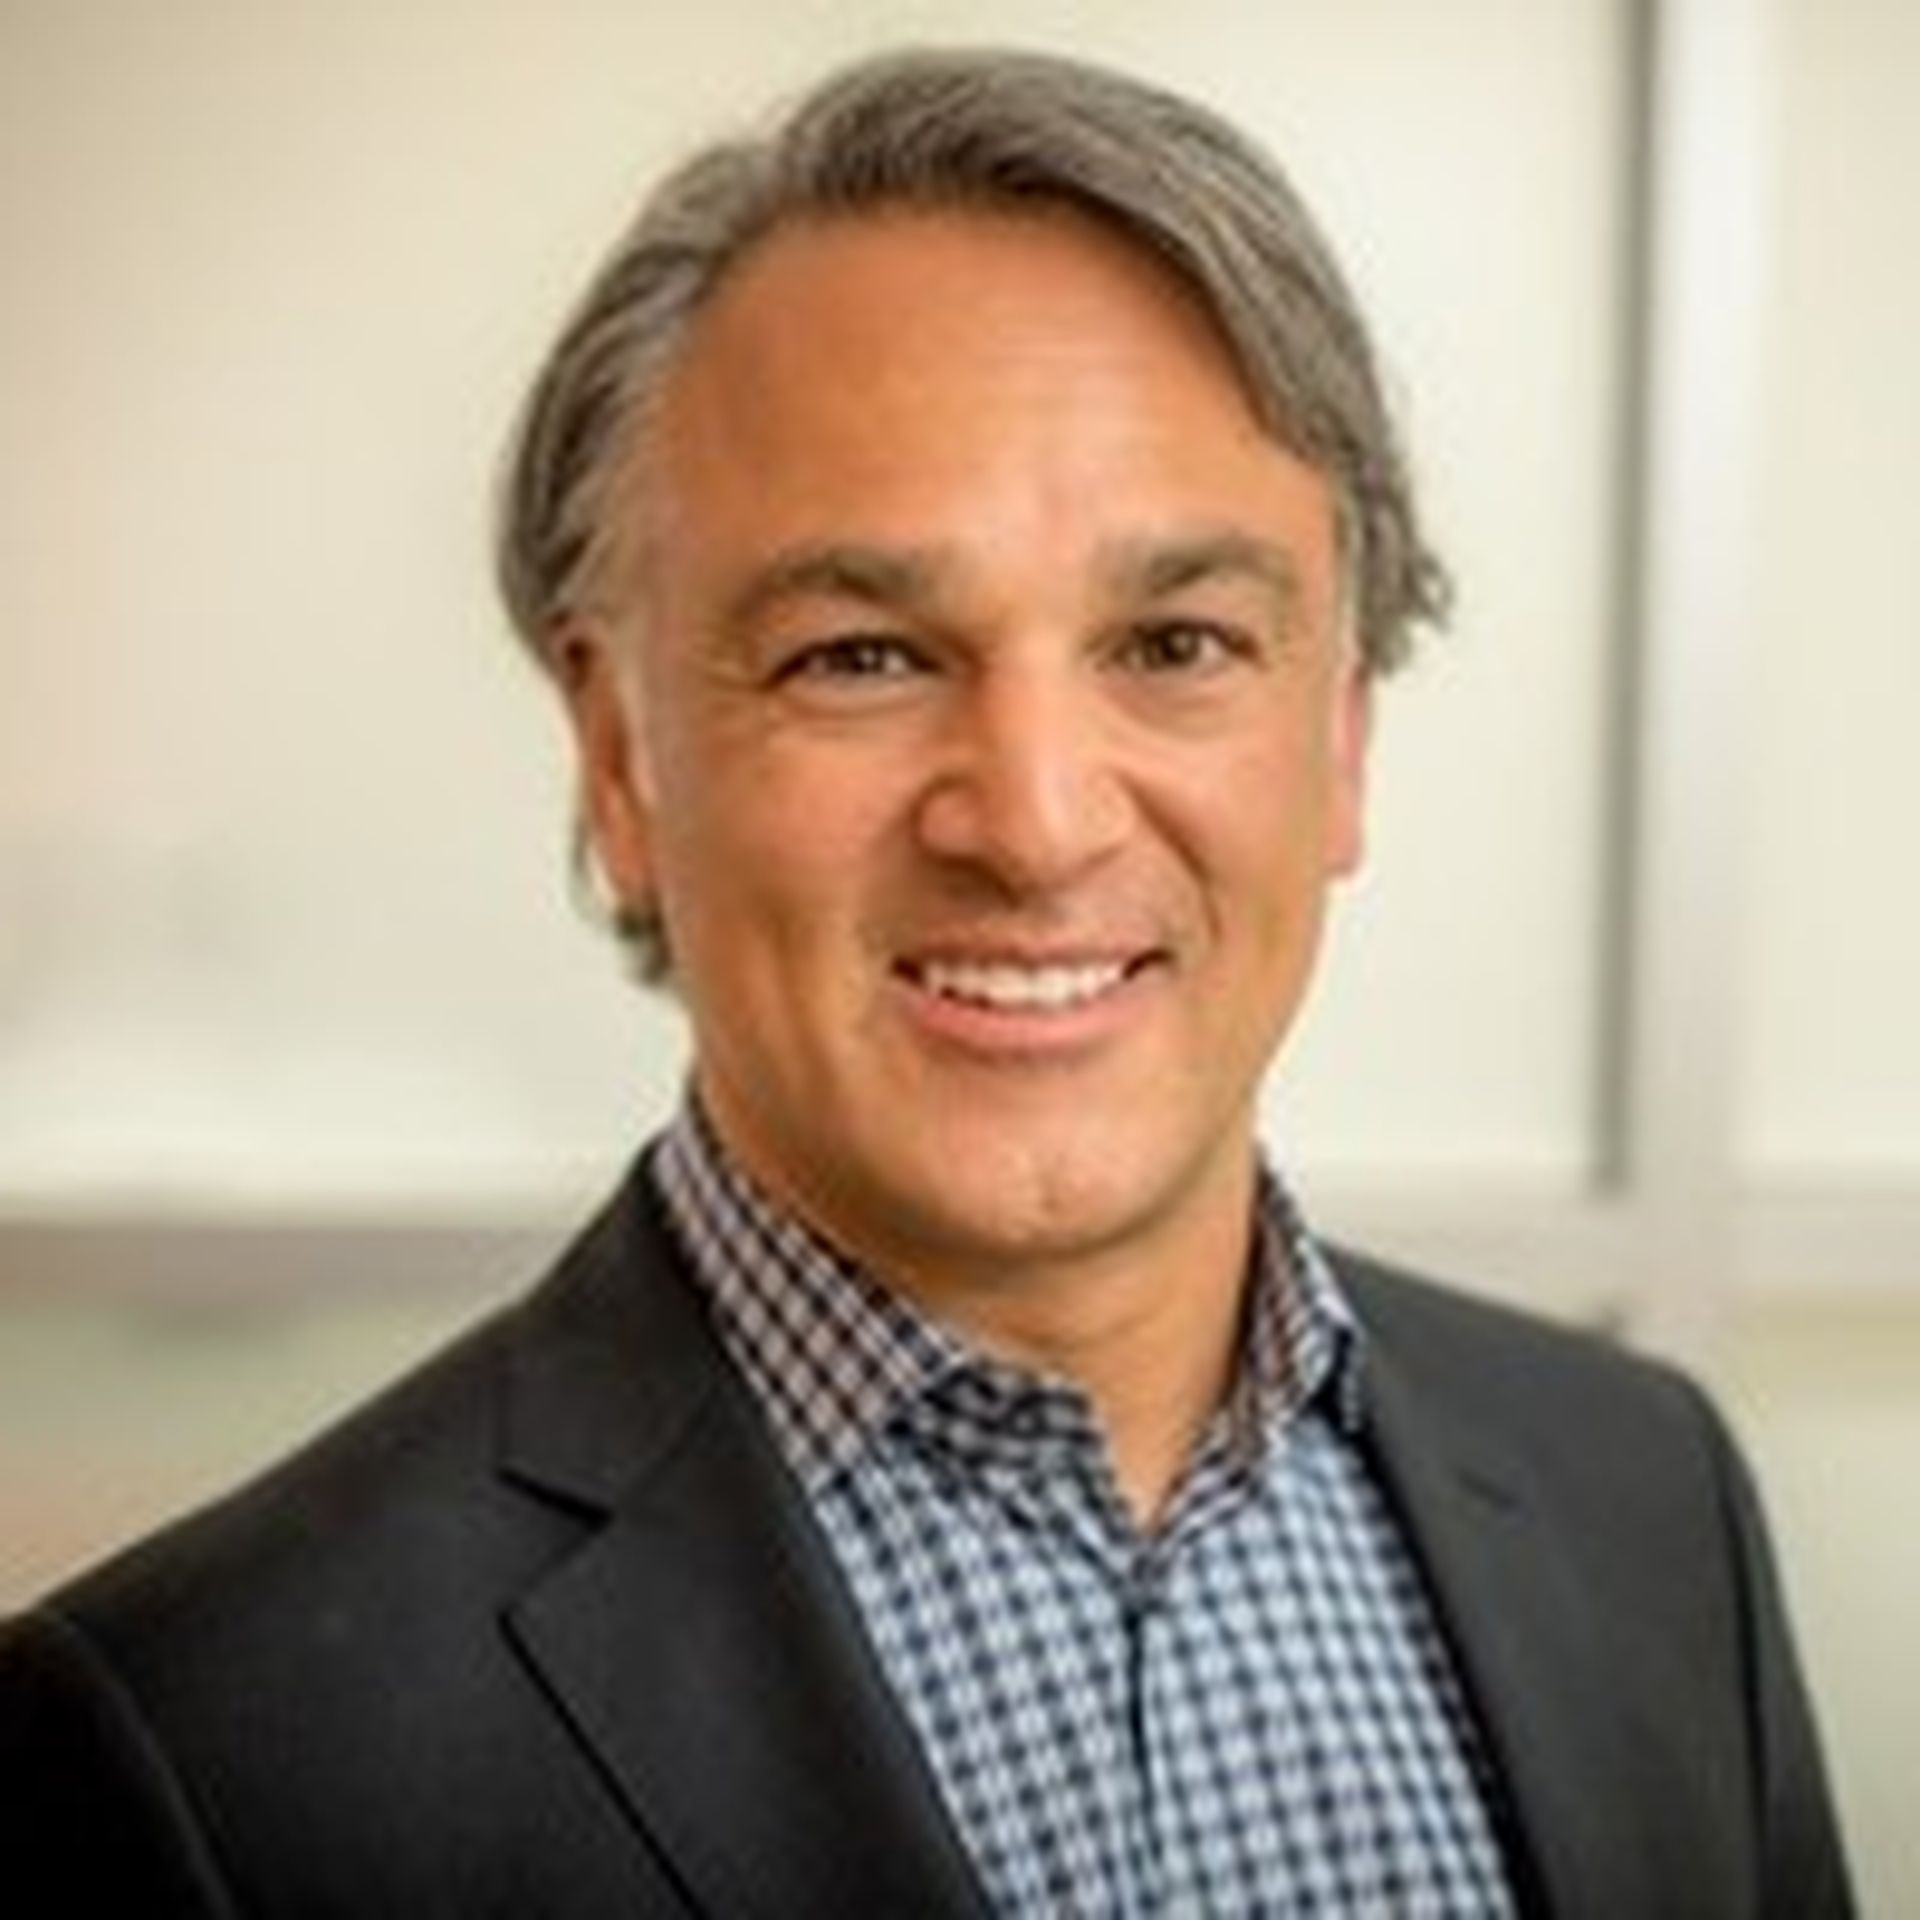 Renato Scaff, Accenture North America supply chain lead